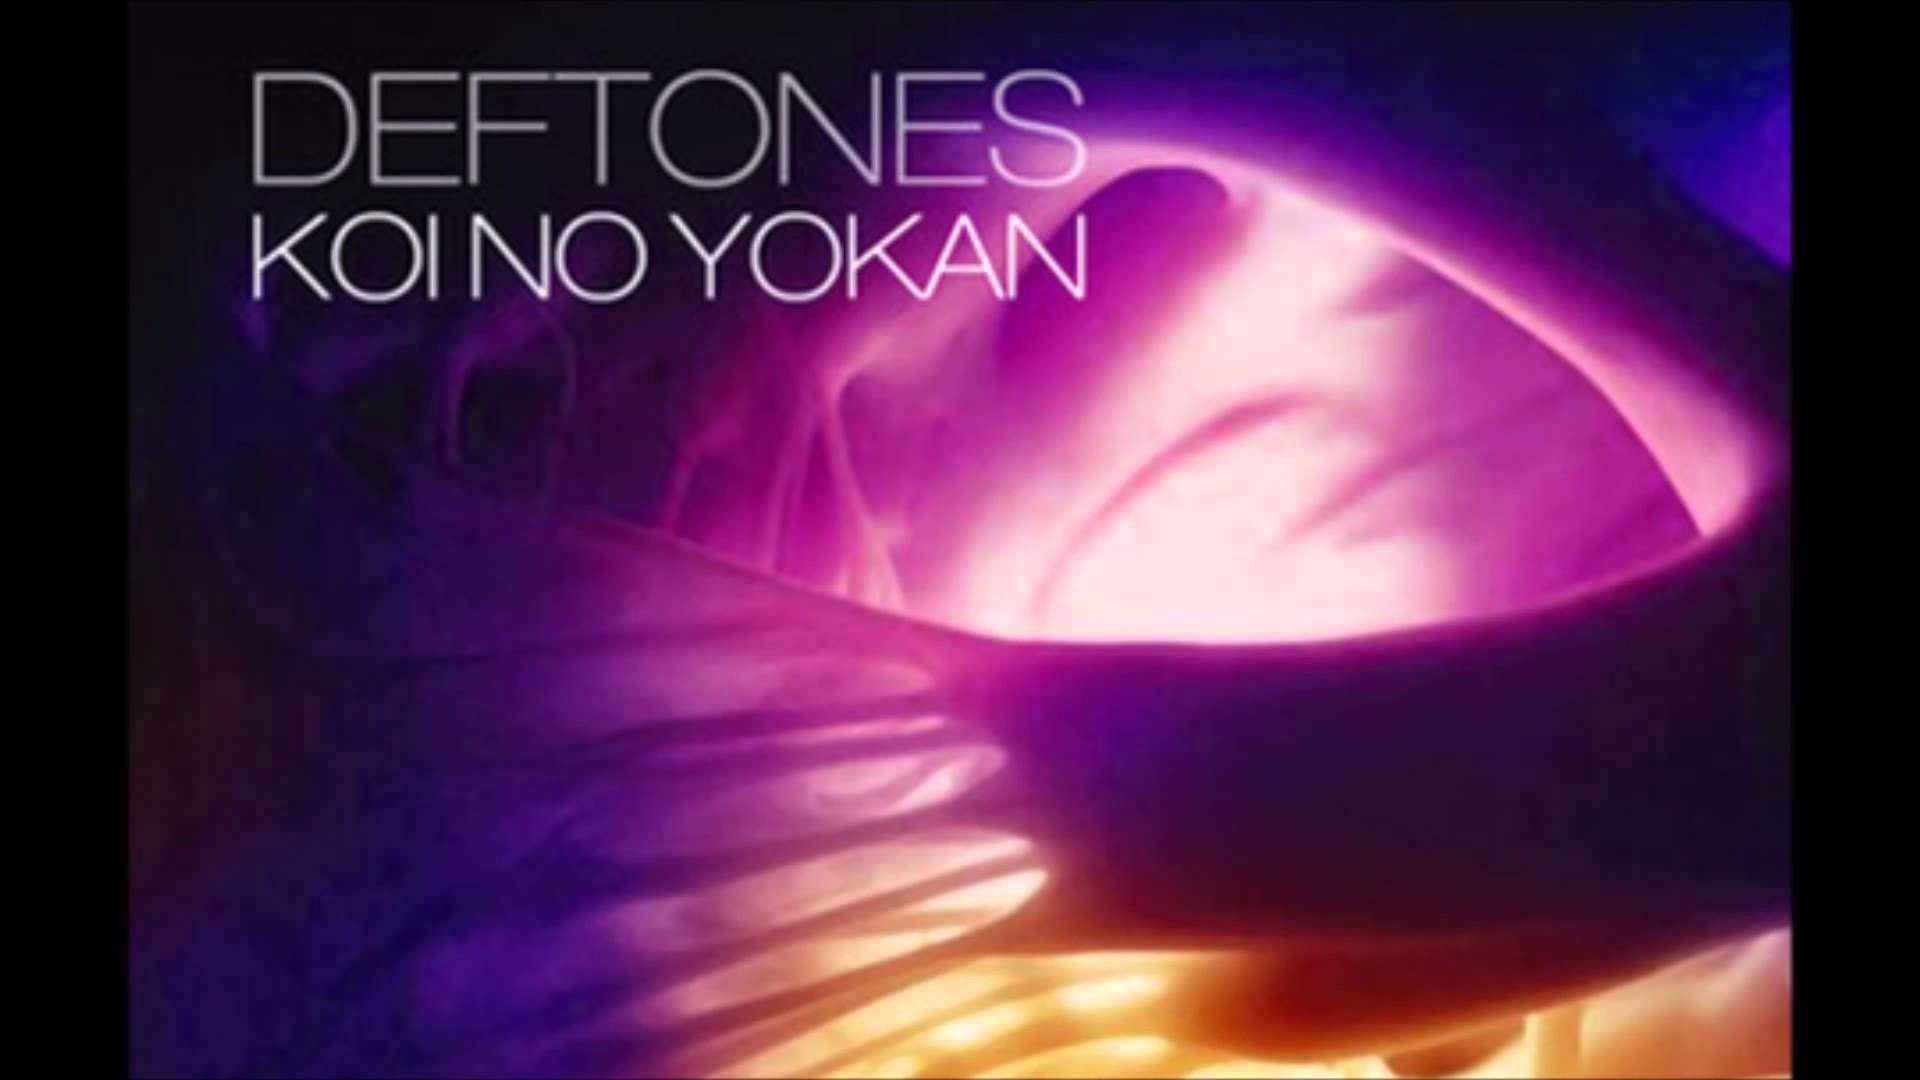 Deftones pony. Deftones 2012 - Koi no Yokan. Deftones Koi no Yokan. Deftones обложка. Deftones. Gore.